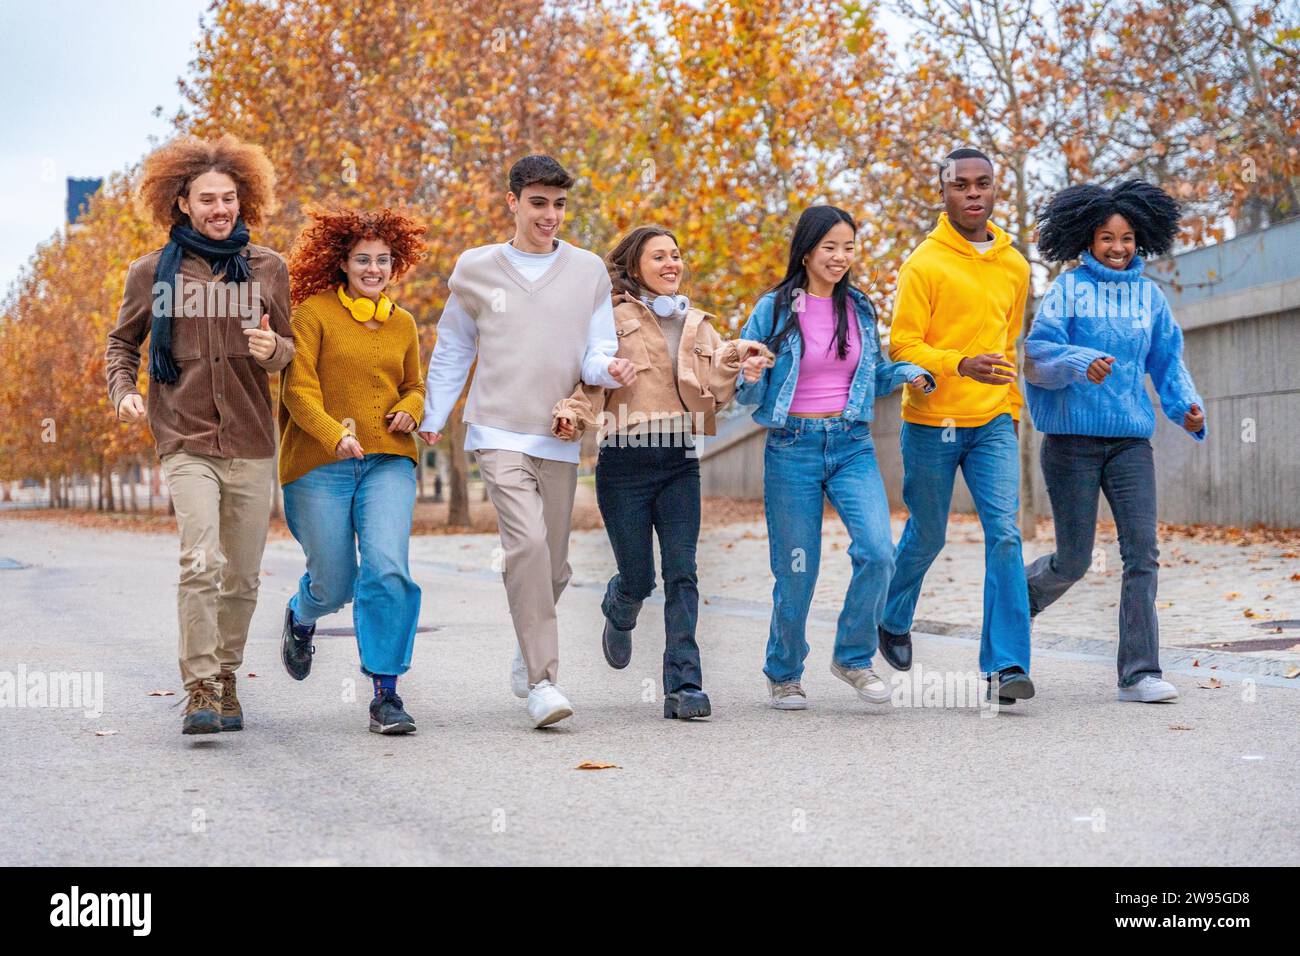 Weite Sicht auf verspielte Freunde aus verschiedenen Ethnien, die auf einer Straße laufen Stockfoto